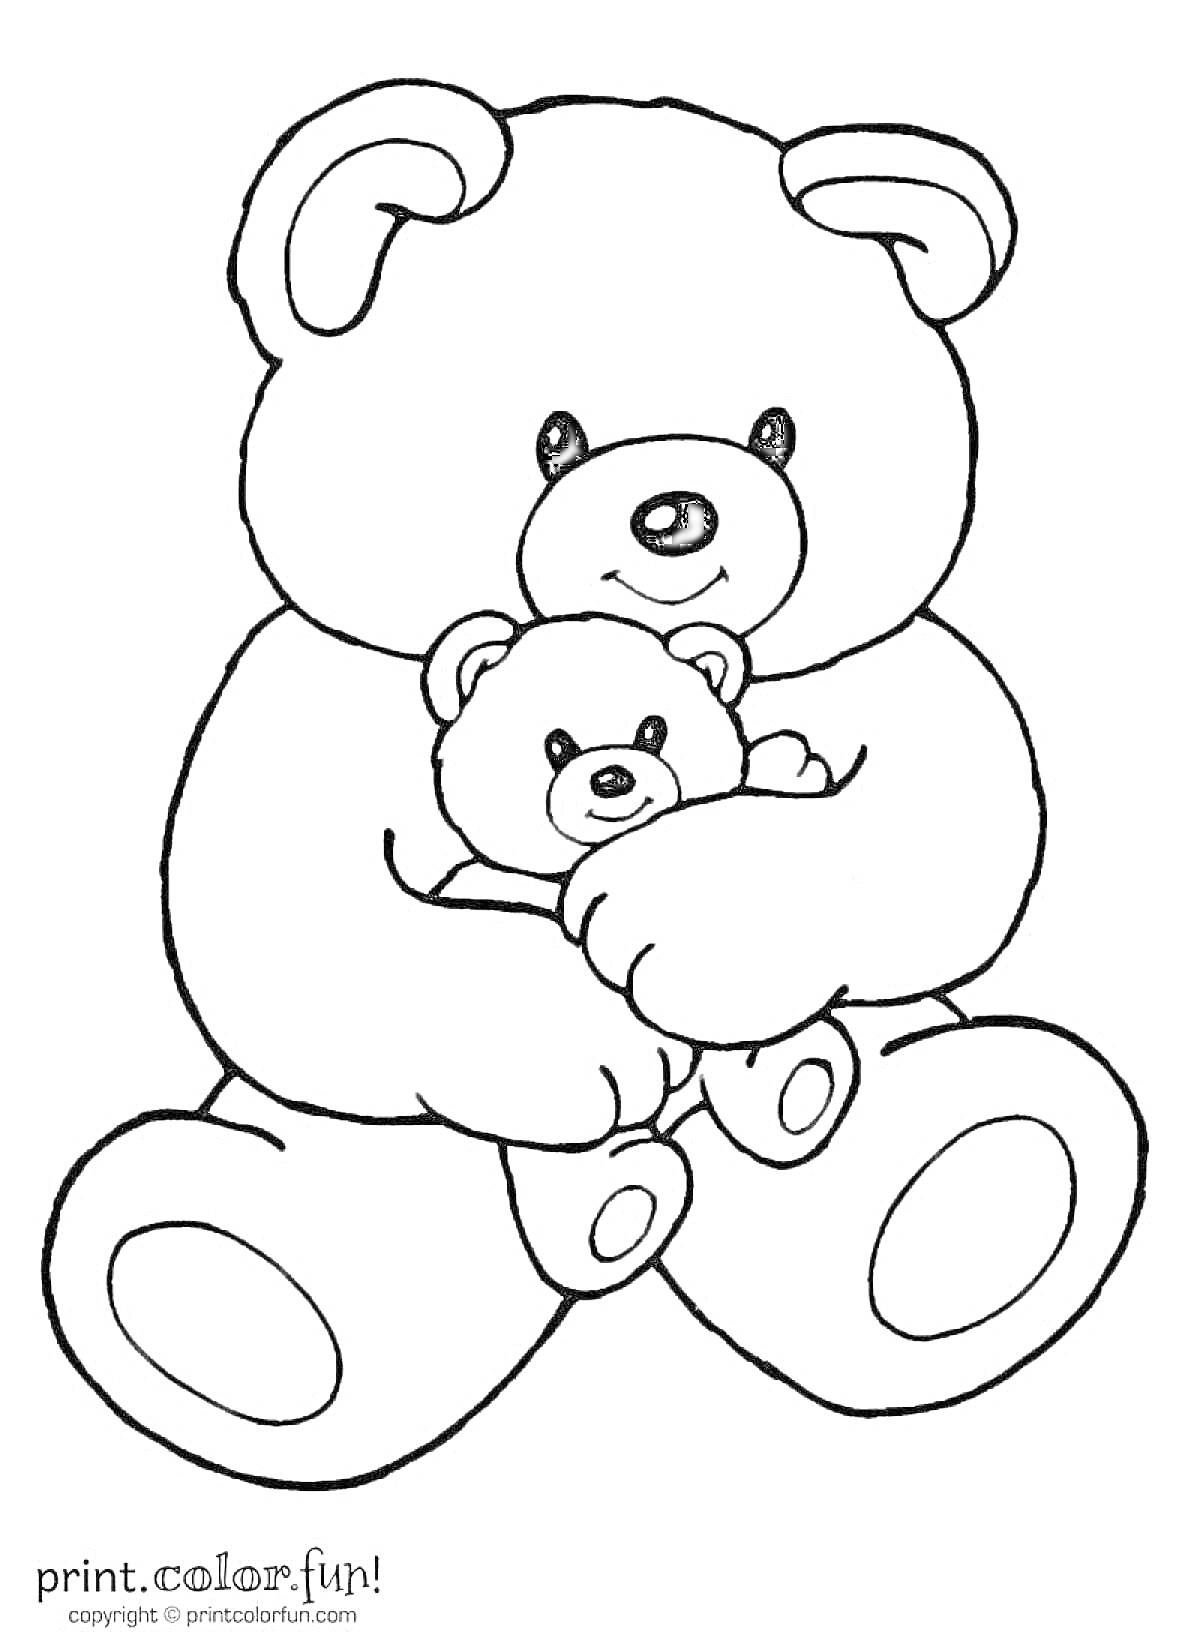 Раскраска Большой медвежонок, обнимающий маленького медвежонка